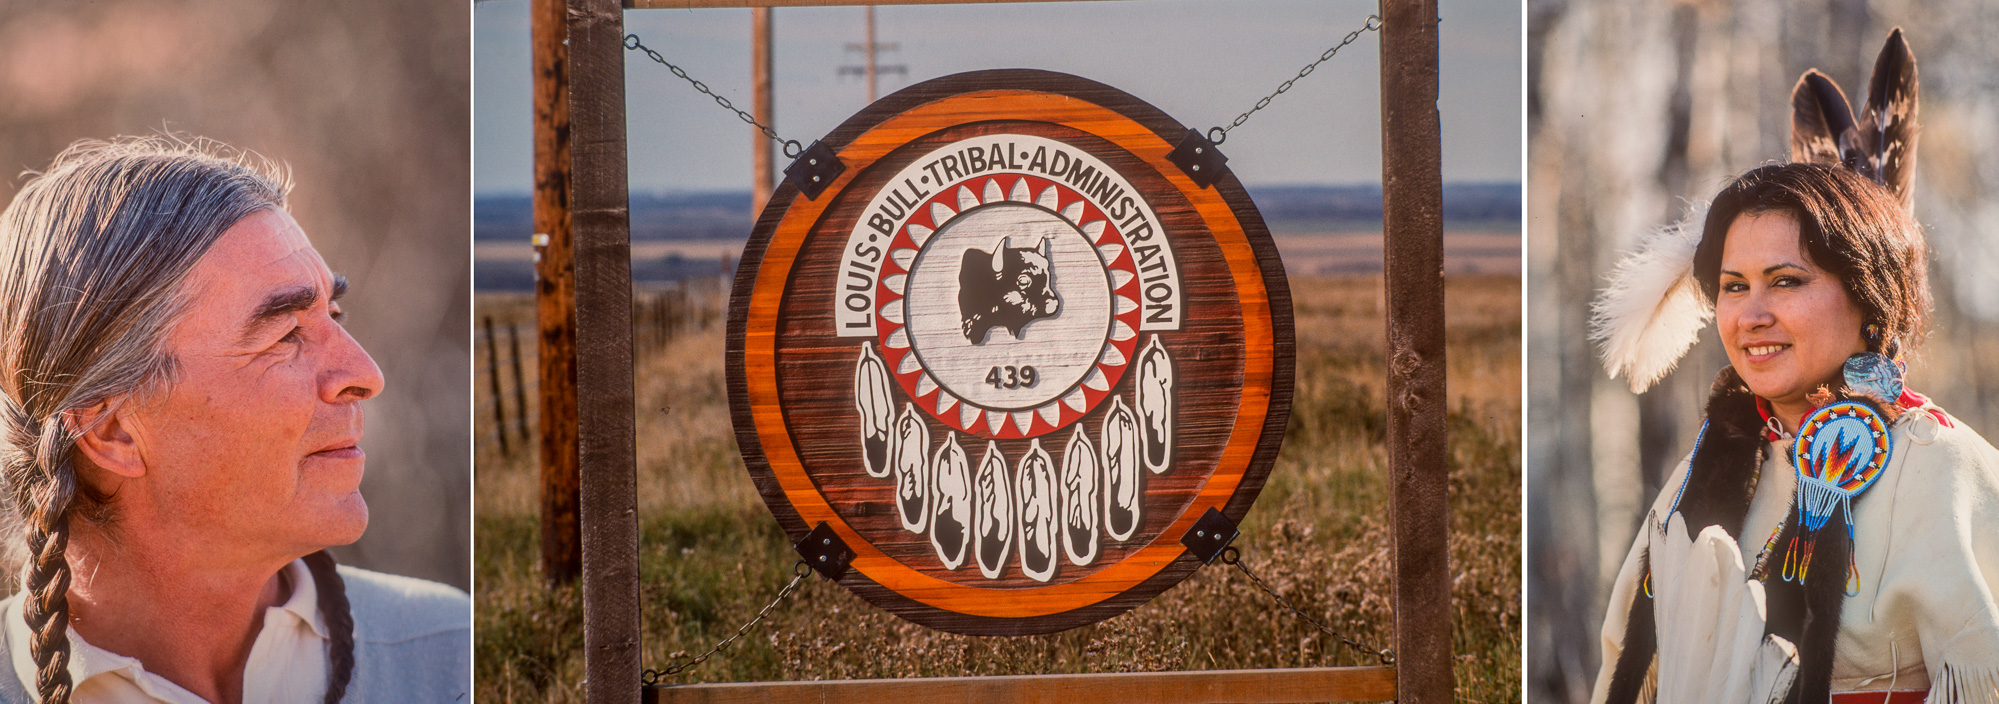 Hoobema - Emblème des Louis Bull dans la réserve "Cree" entouré d'Indiens en tenue traditionnelle.